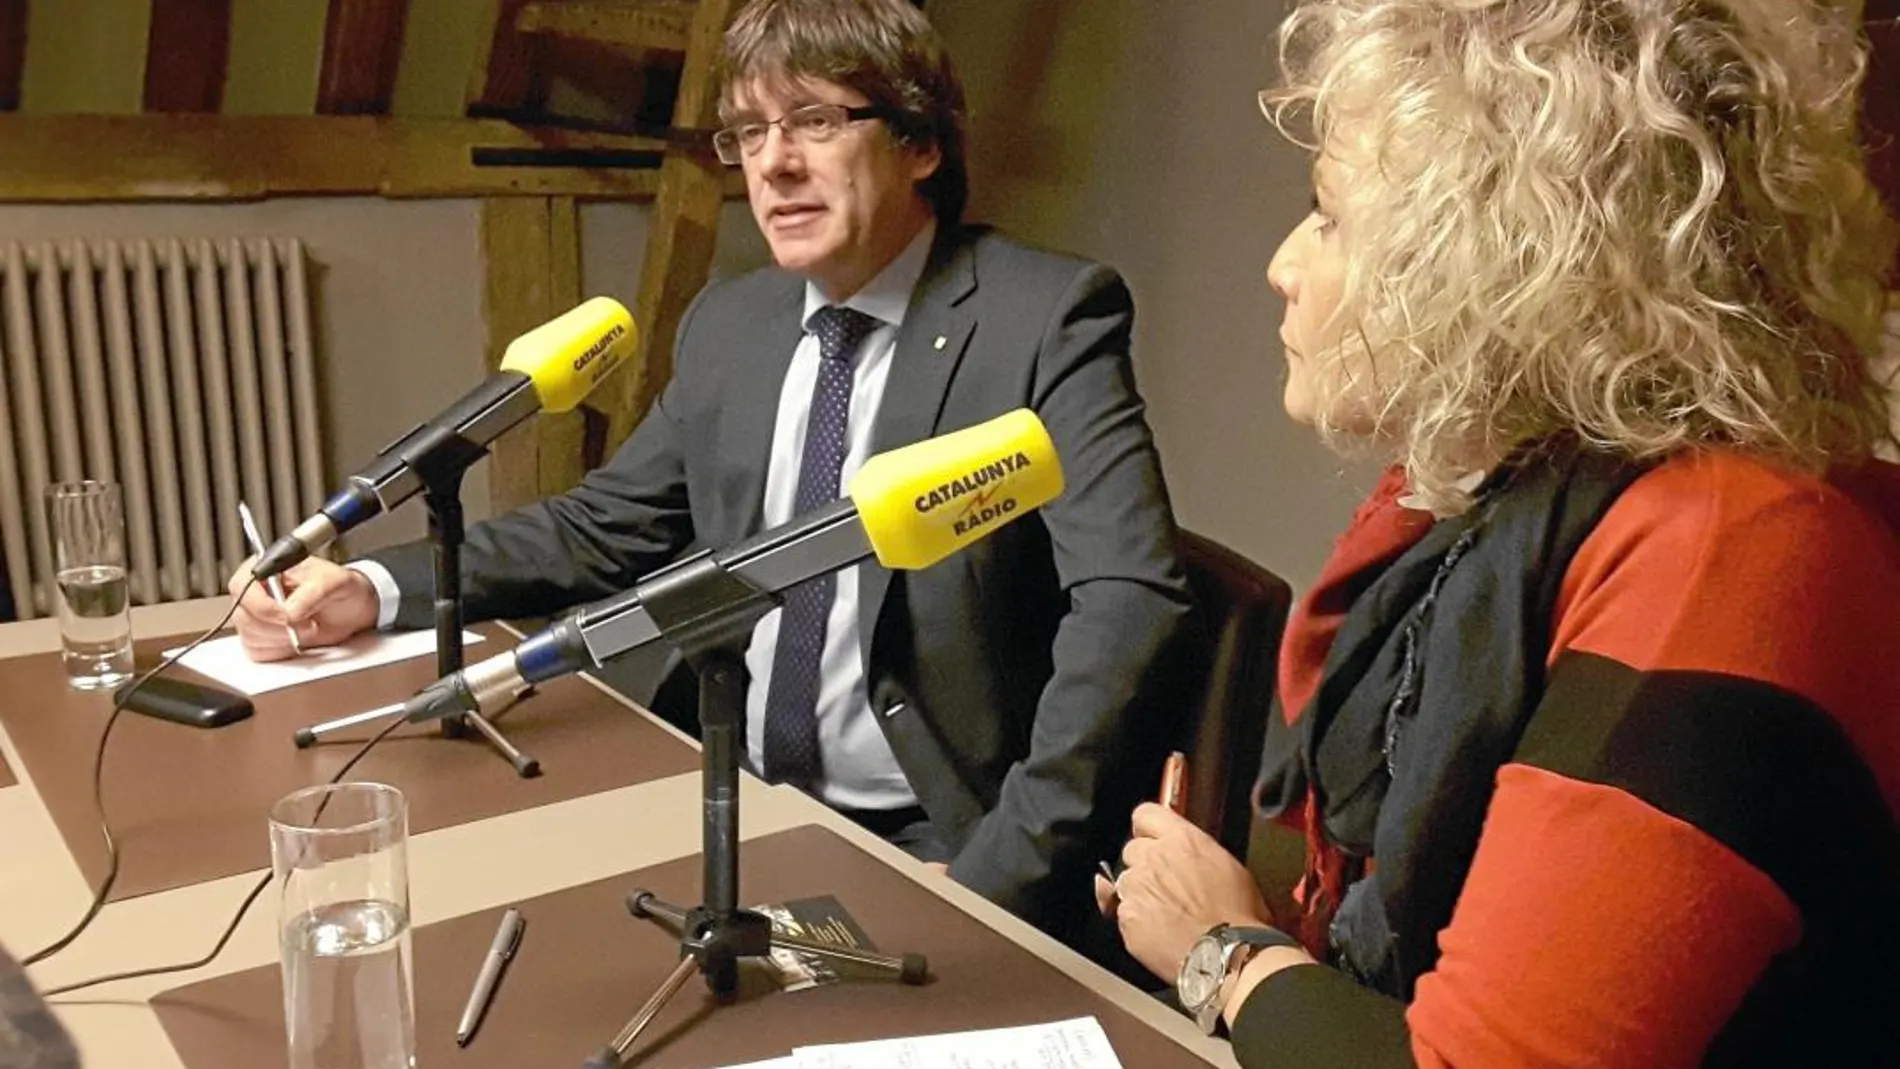 Mònica Terribas entrevistando en Bélgica a Carles Puigdemont